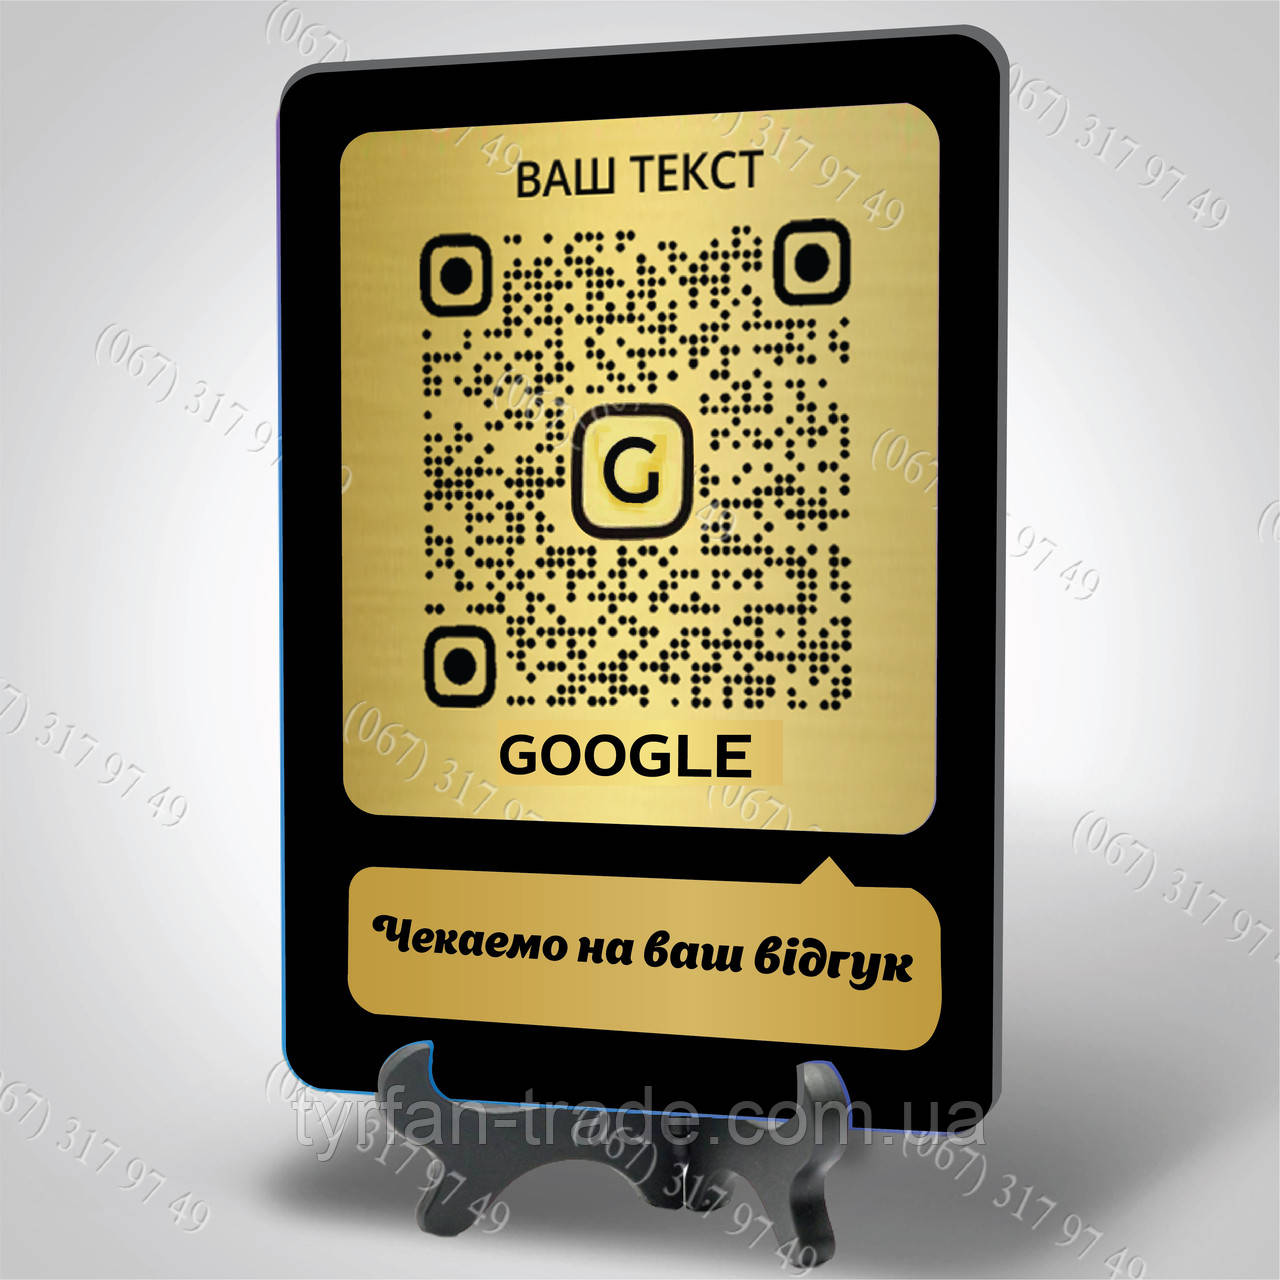 Металева табличка для складання відгуків з qr-кодом у Google гугл картки для встановлення на стіл або стіну